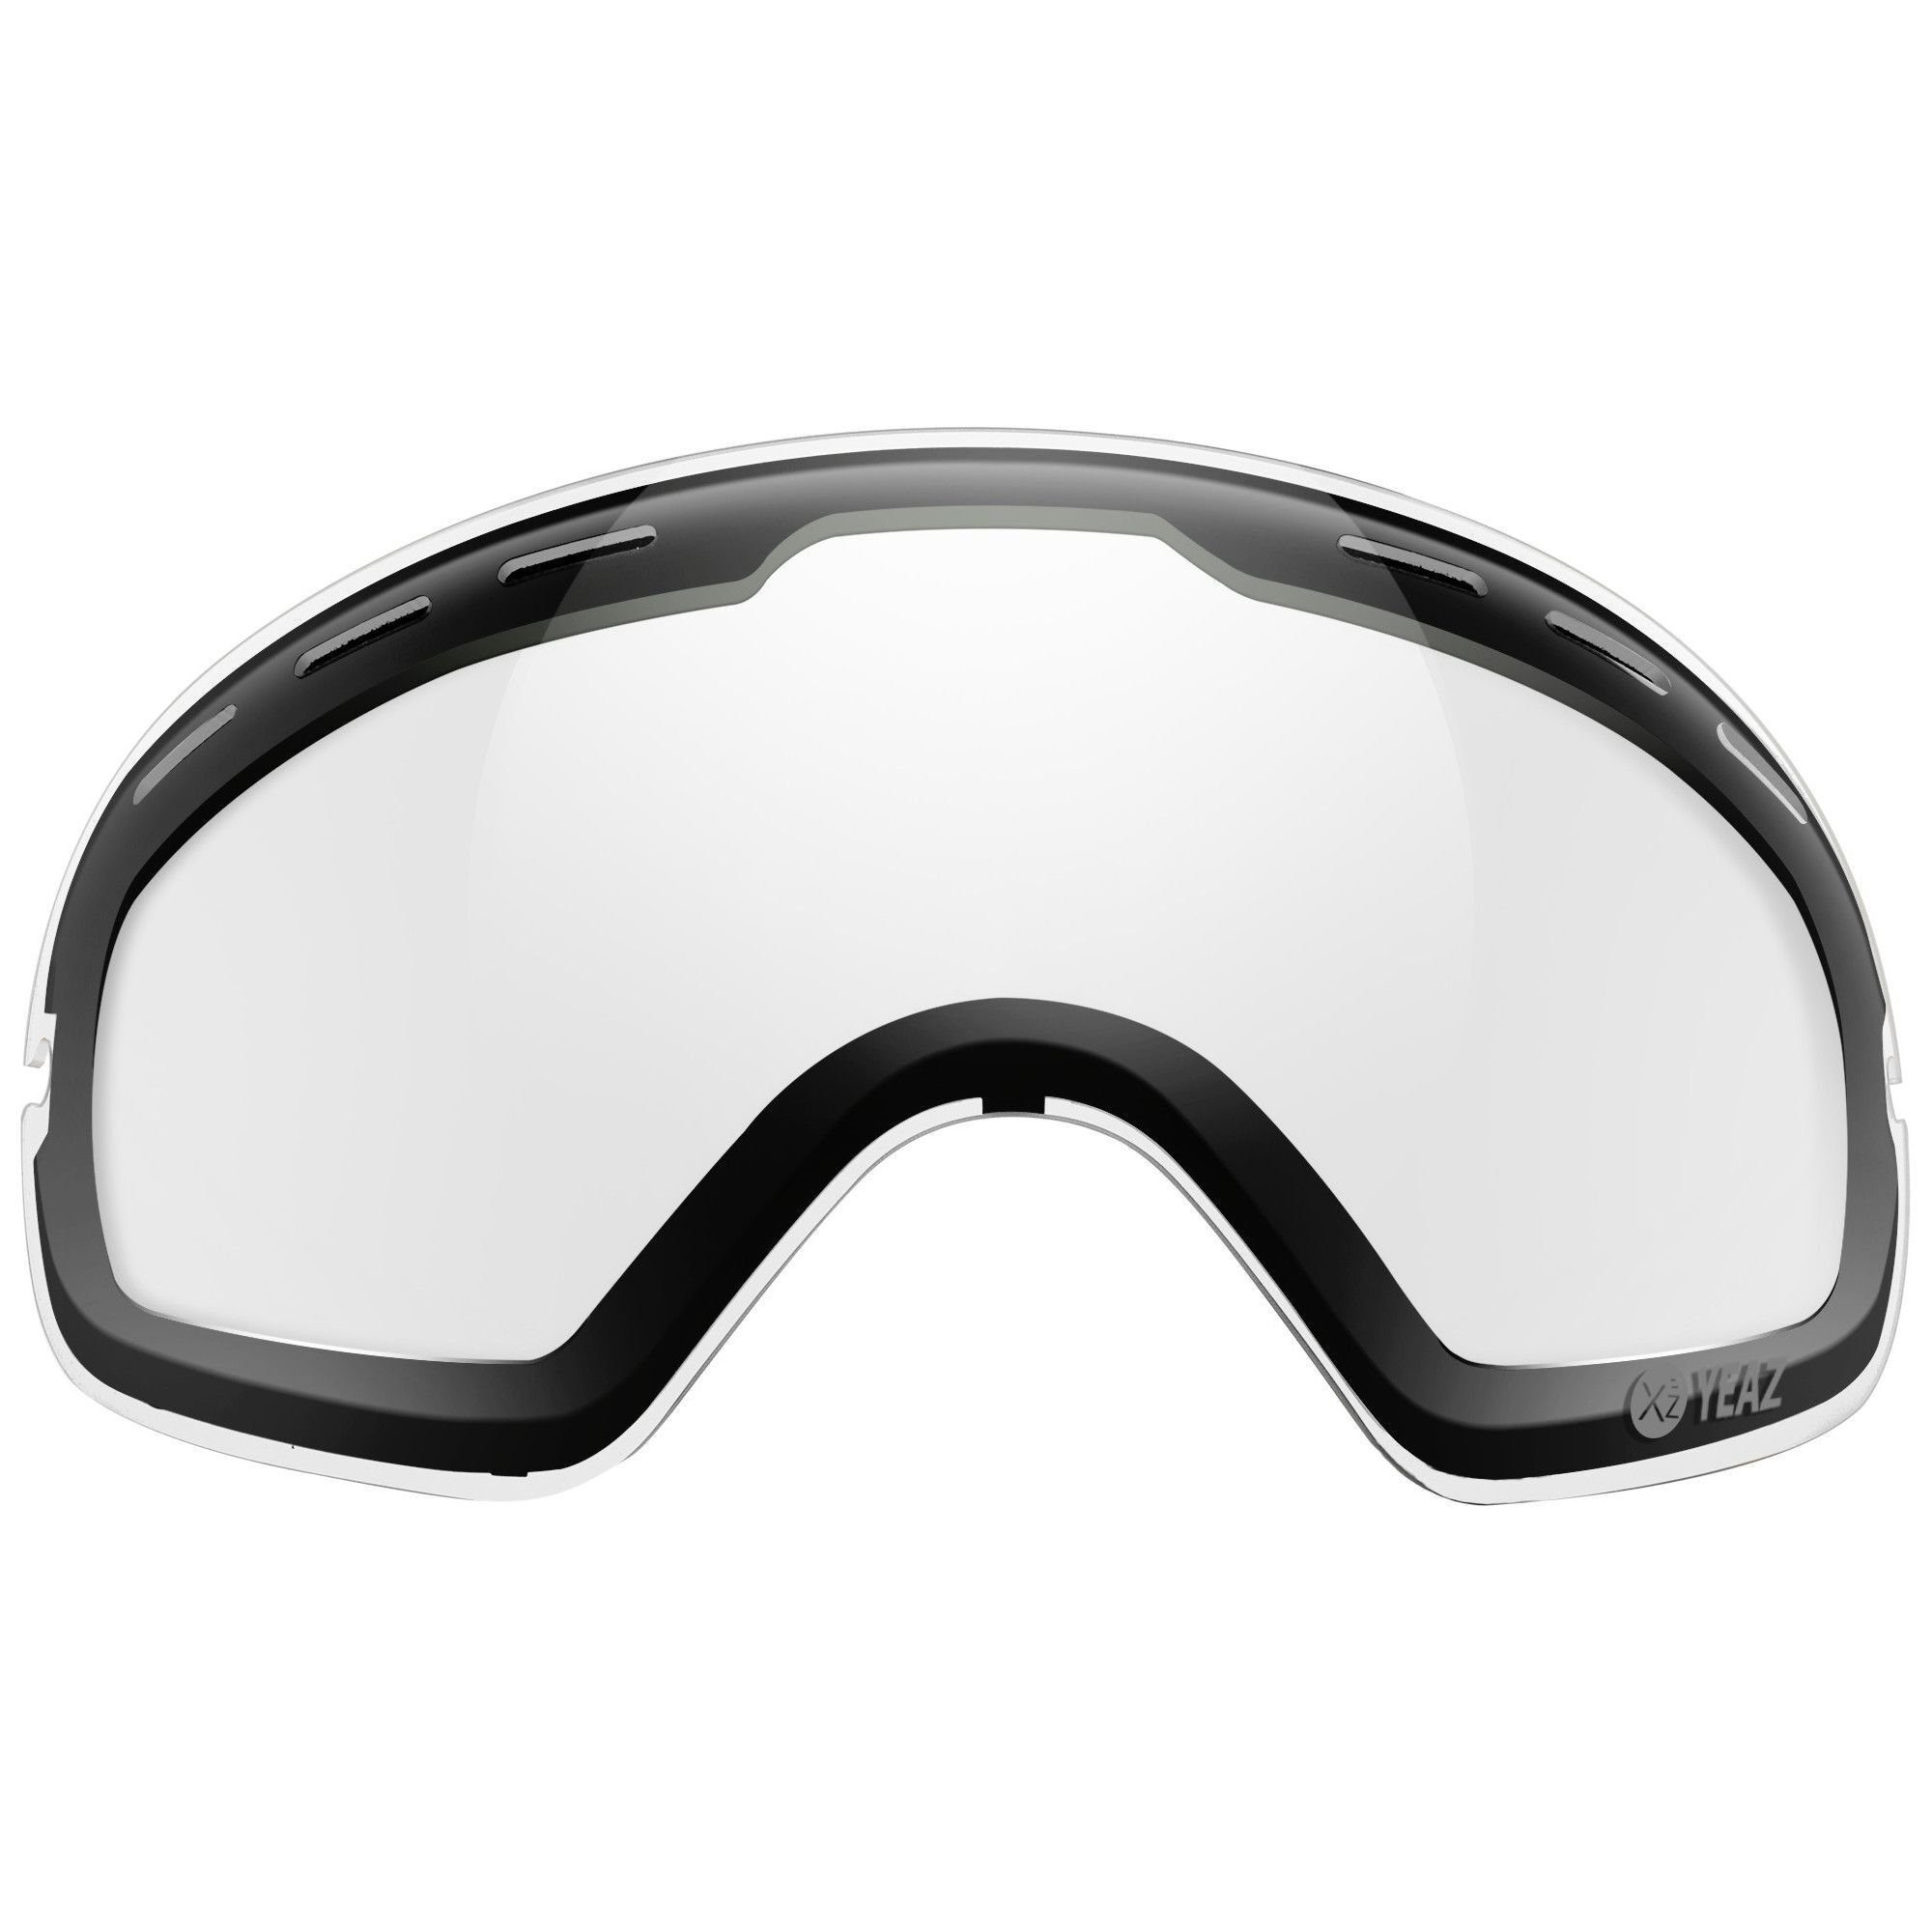 YEAZ Skibrille XTRM-SUMMIT photochrome wechselglas, mit rahmen, Ersatzglas für XTRM-SUMMIT Skibrille mit Rahmen